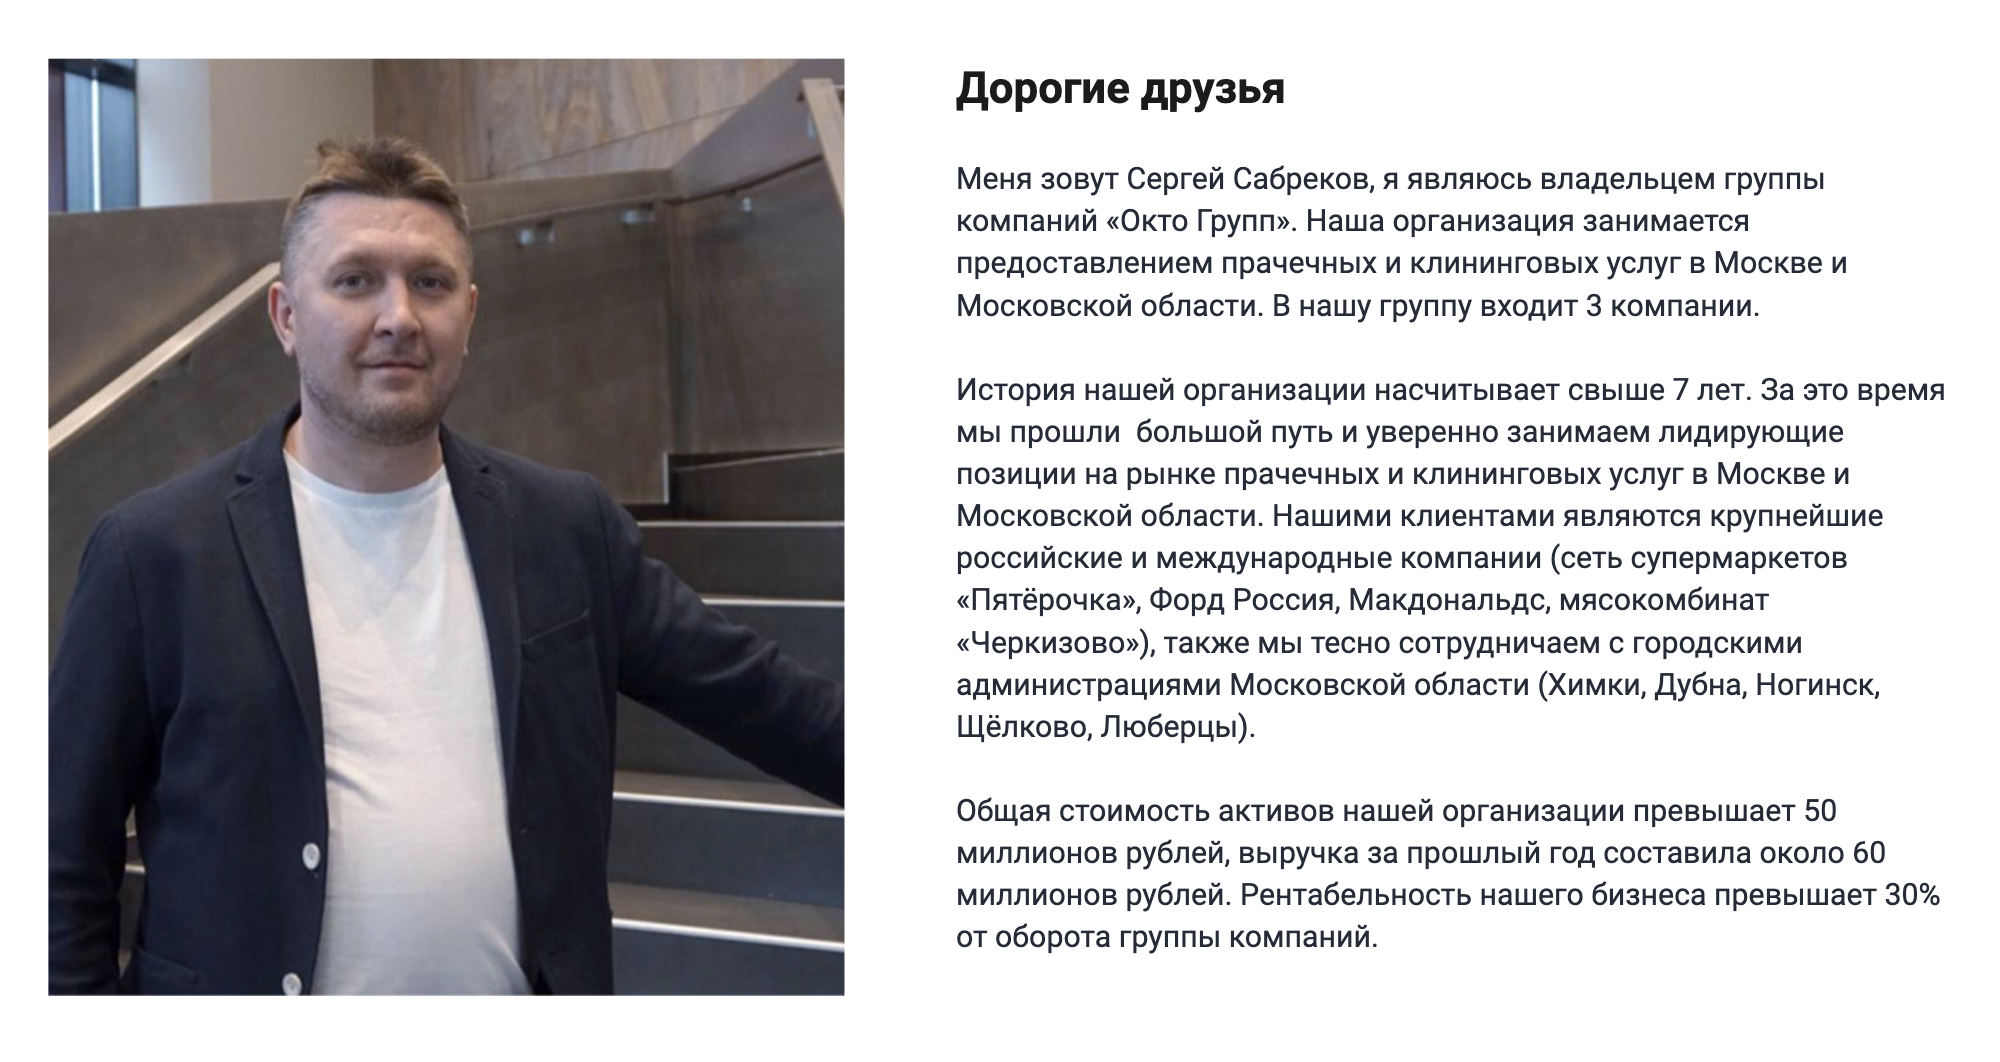 На сайте Сергей Сабреков заявляет, что владеет группой компаний «Окто⁠-⁠груп». Подтверждения этому я не нашел